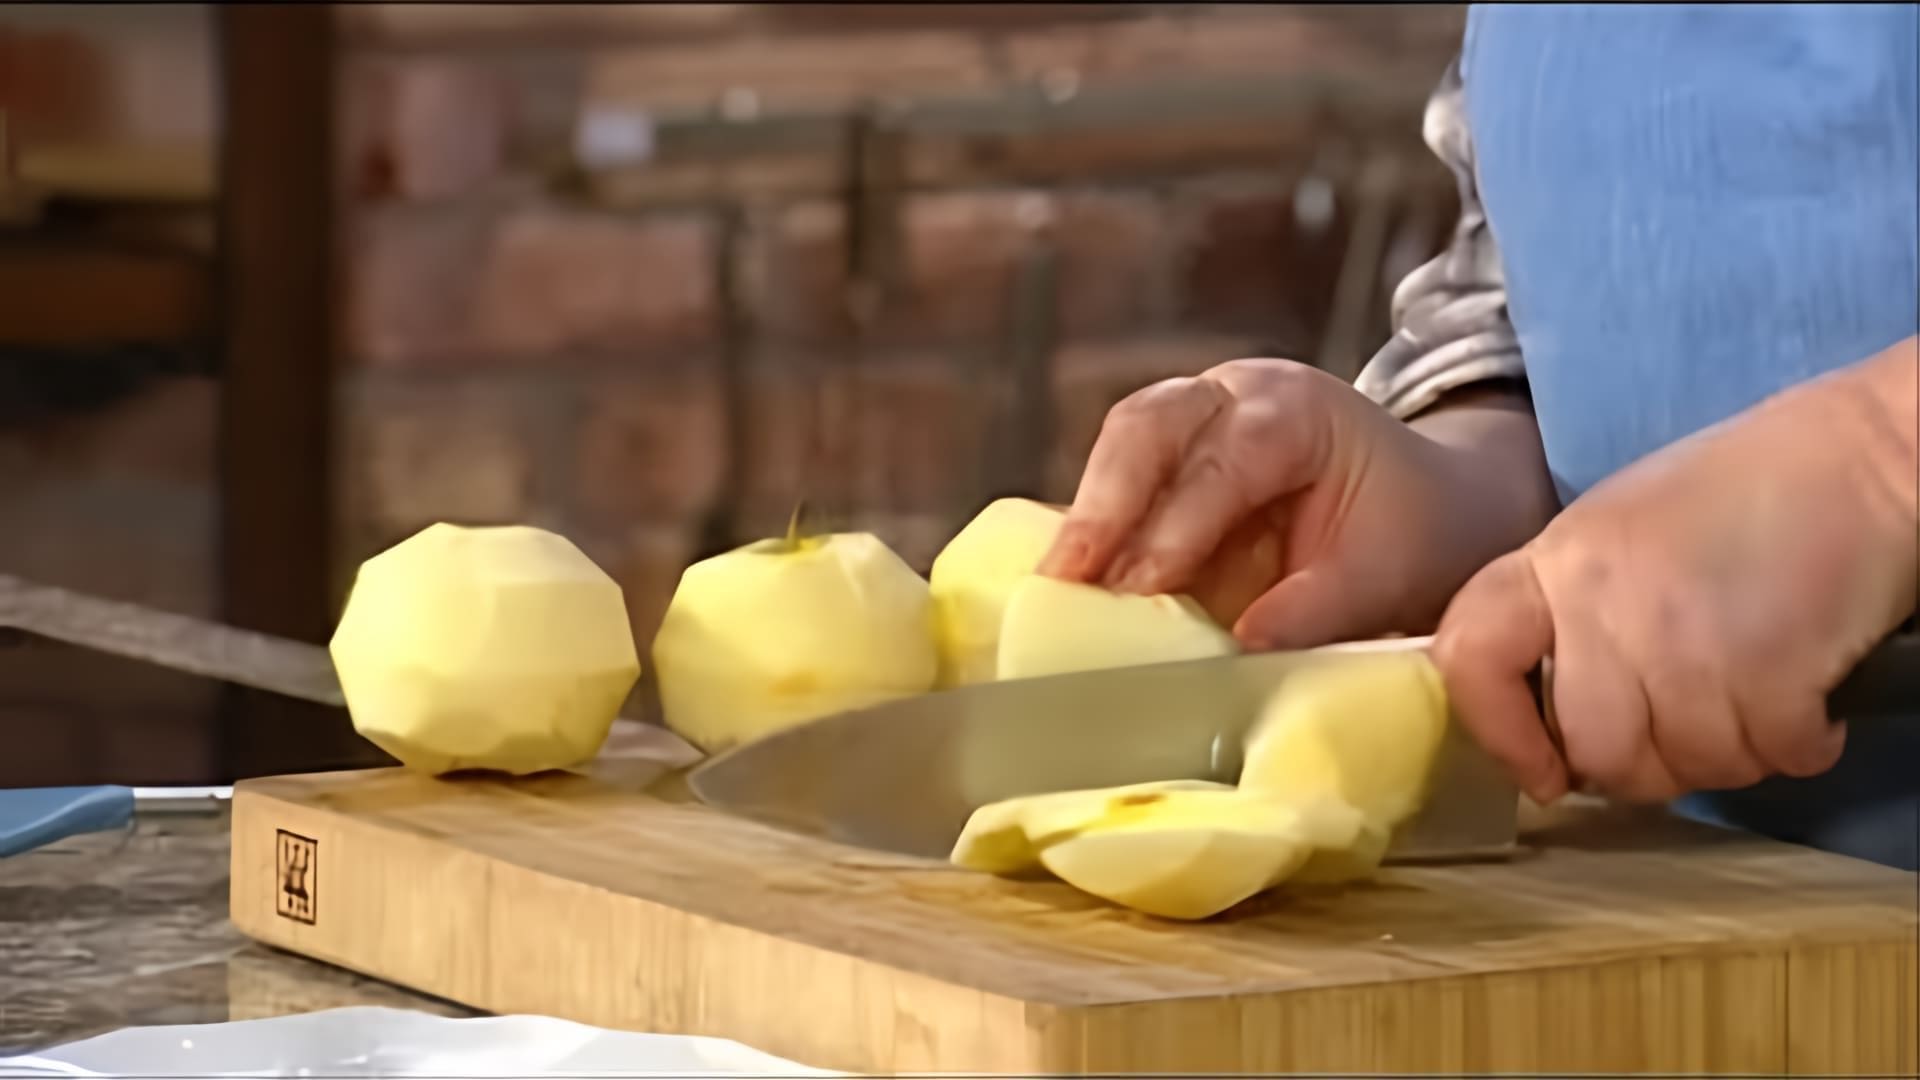 В этом видео Ольга Сюткина, ведущая программы "Закрома", рассказывает о пользе яблок и их применении в кулинарии